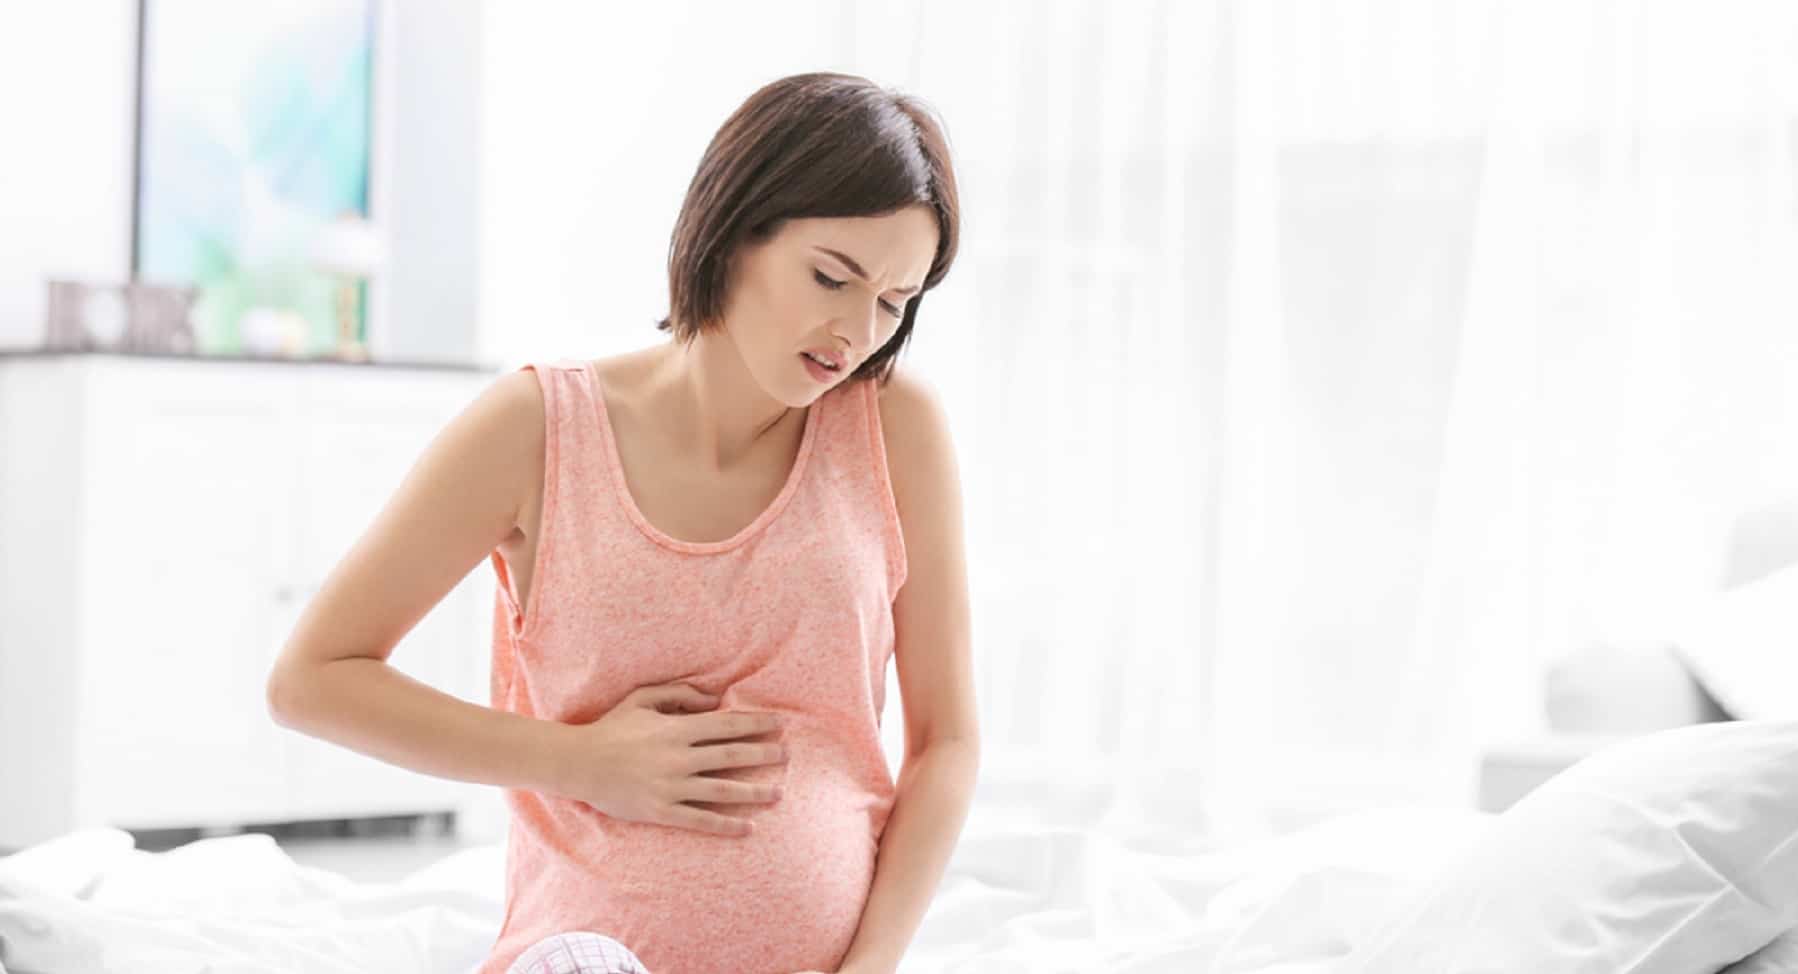 Ból brzucha podczas ciąży? To może być oznaka zagrożenia, wiesz, rozpoznajmy objawy